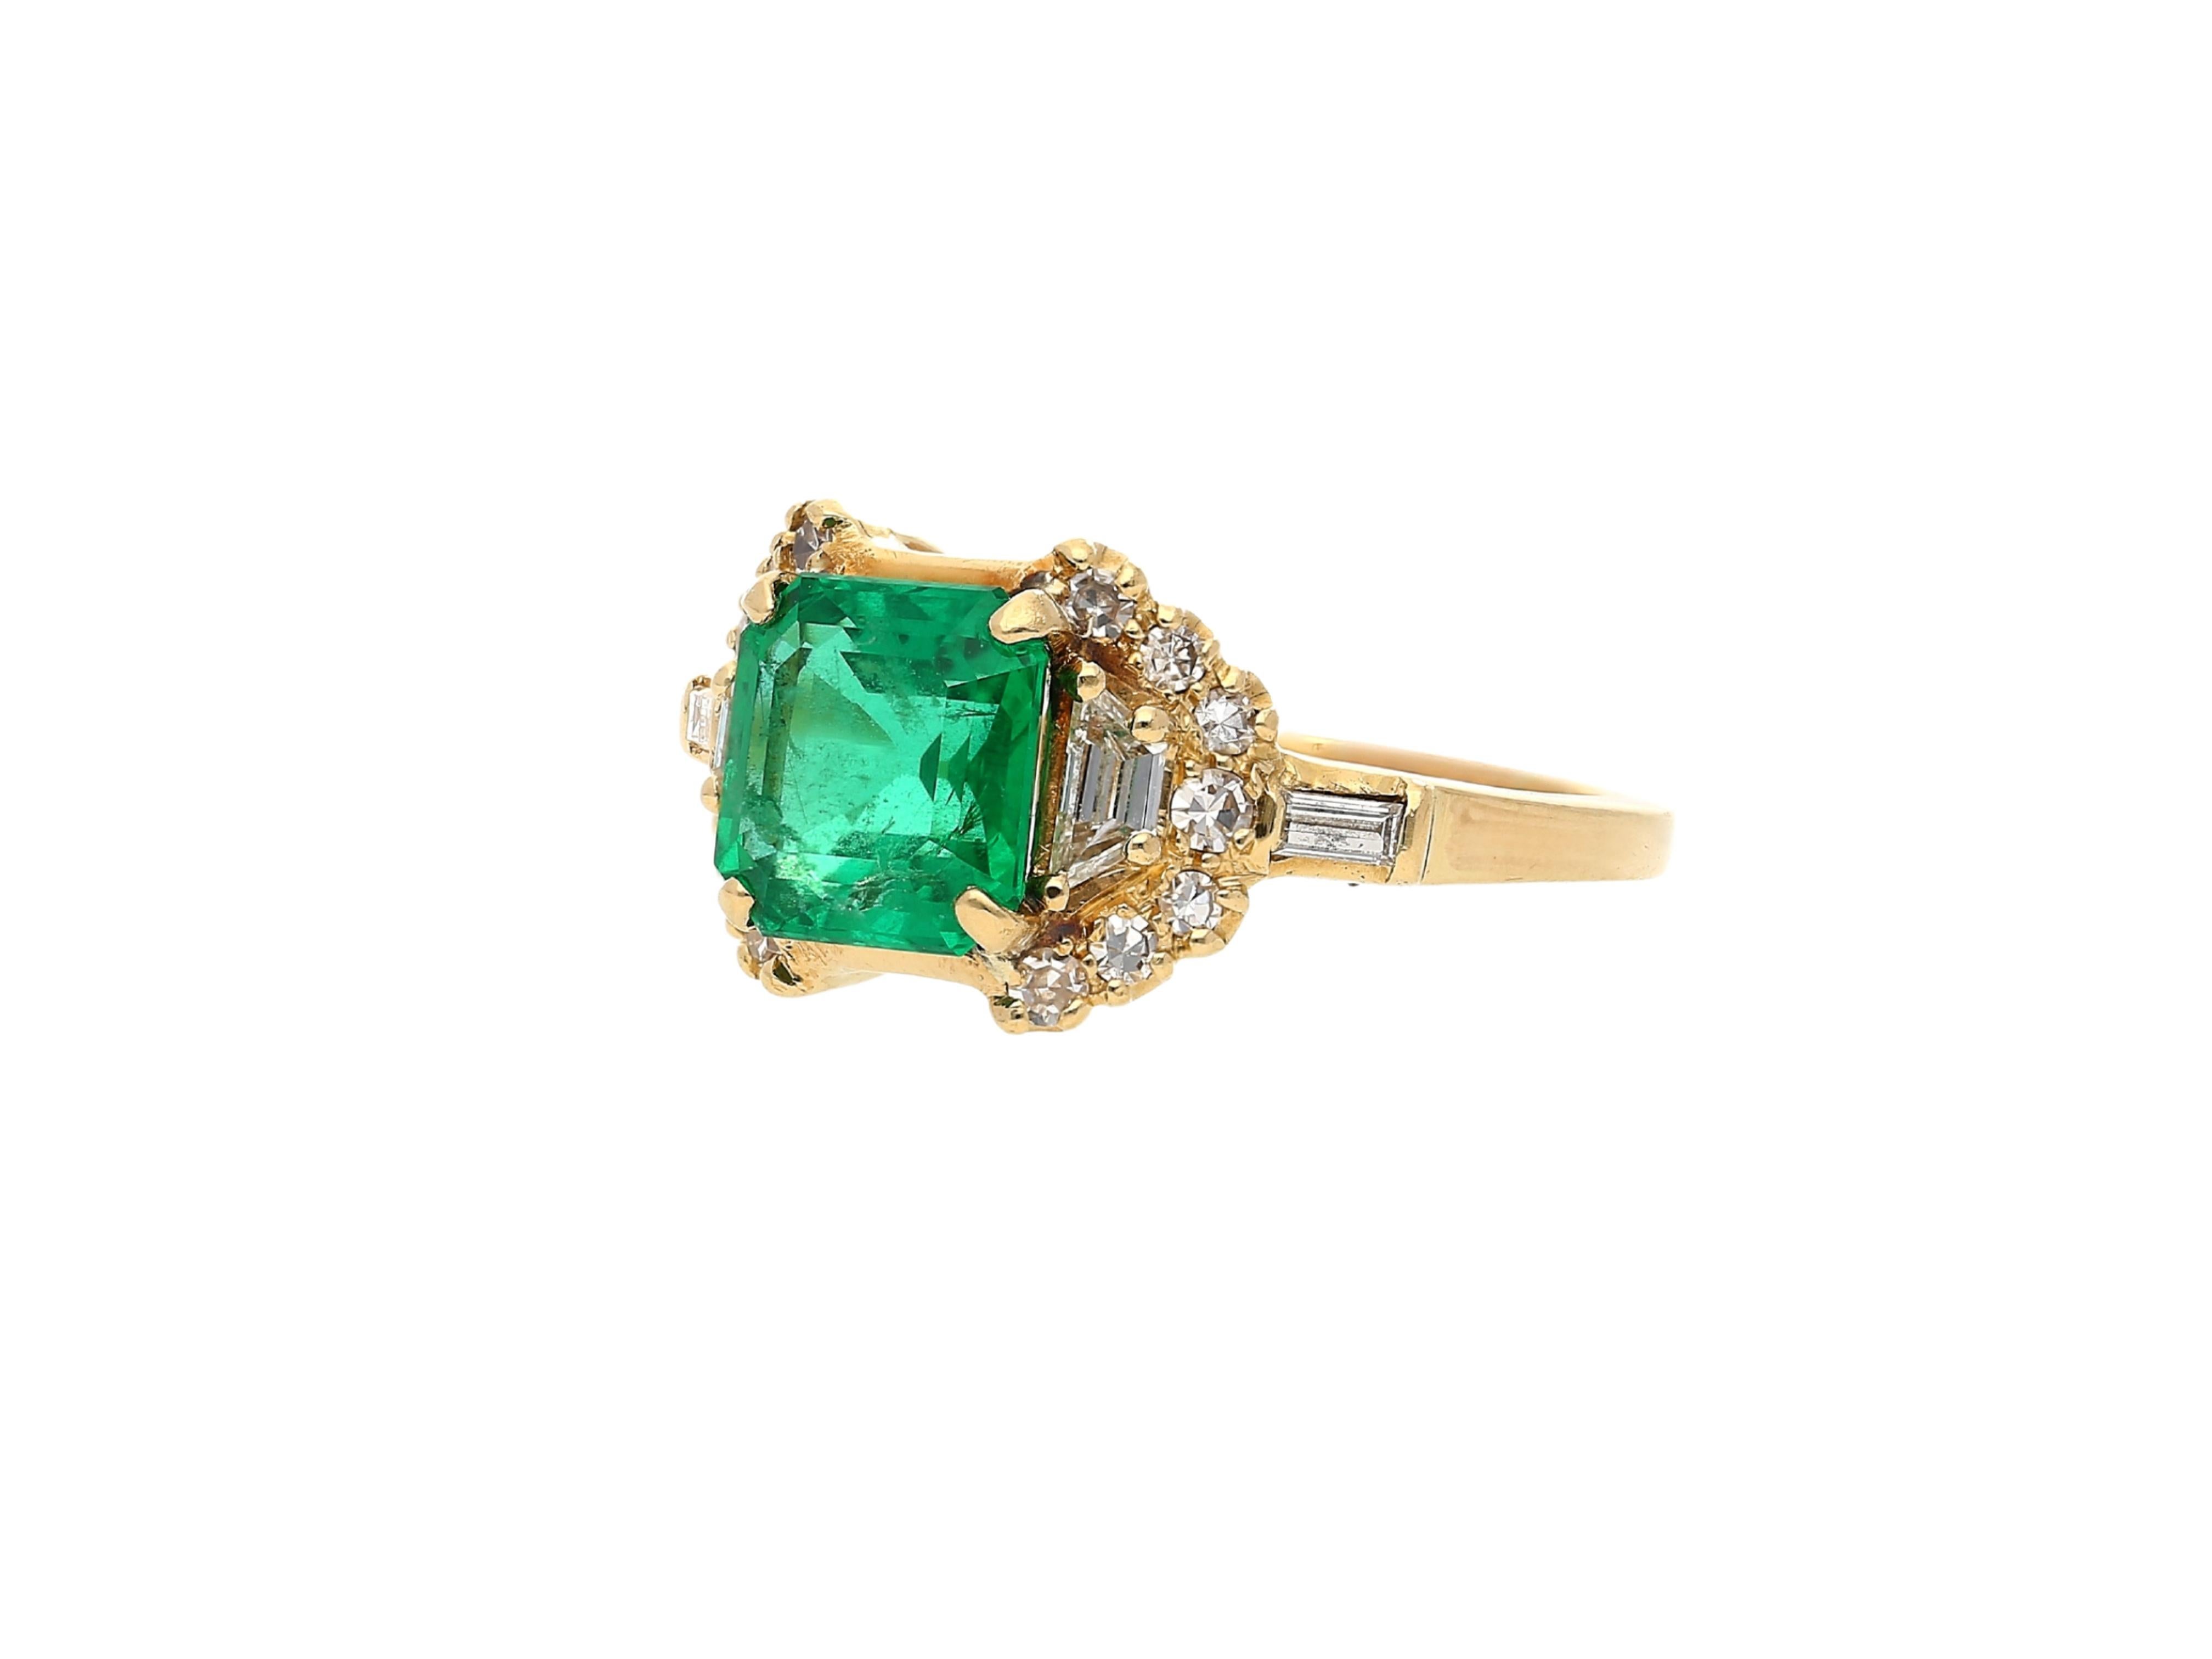 GRS-zertifizierter natürlicher kolumbianischer Smaragd in einer Vintage-Art-Deco-Ringfassung.

Ring Details: 
✔ Gold Karat: 18K 
✔ Ring Gewicht: 5.29 Gramm
✔ GRS-zertifiziert 
✔ CIRCA 1990er Jahre

Smaragd Details: 
✔ Smaragdgewicht: 2,09 Karat
✔